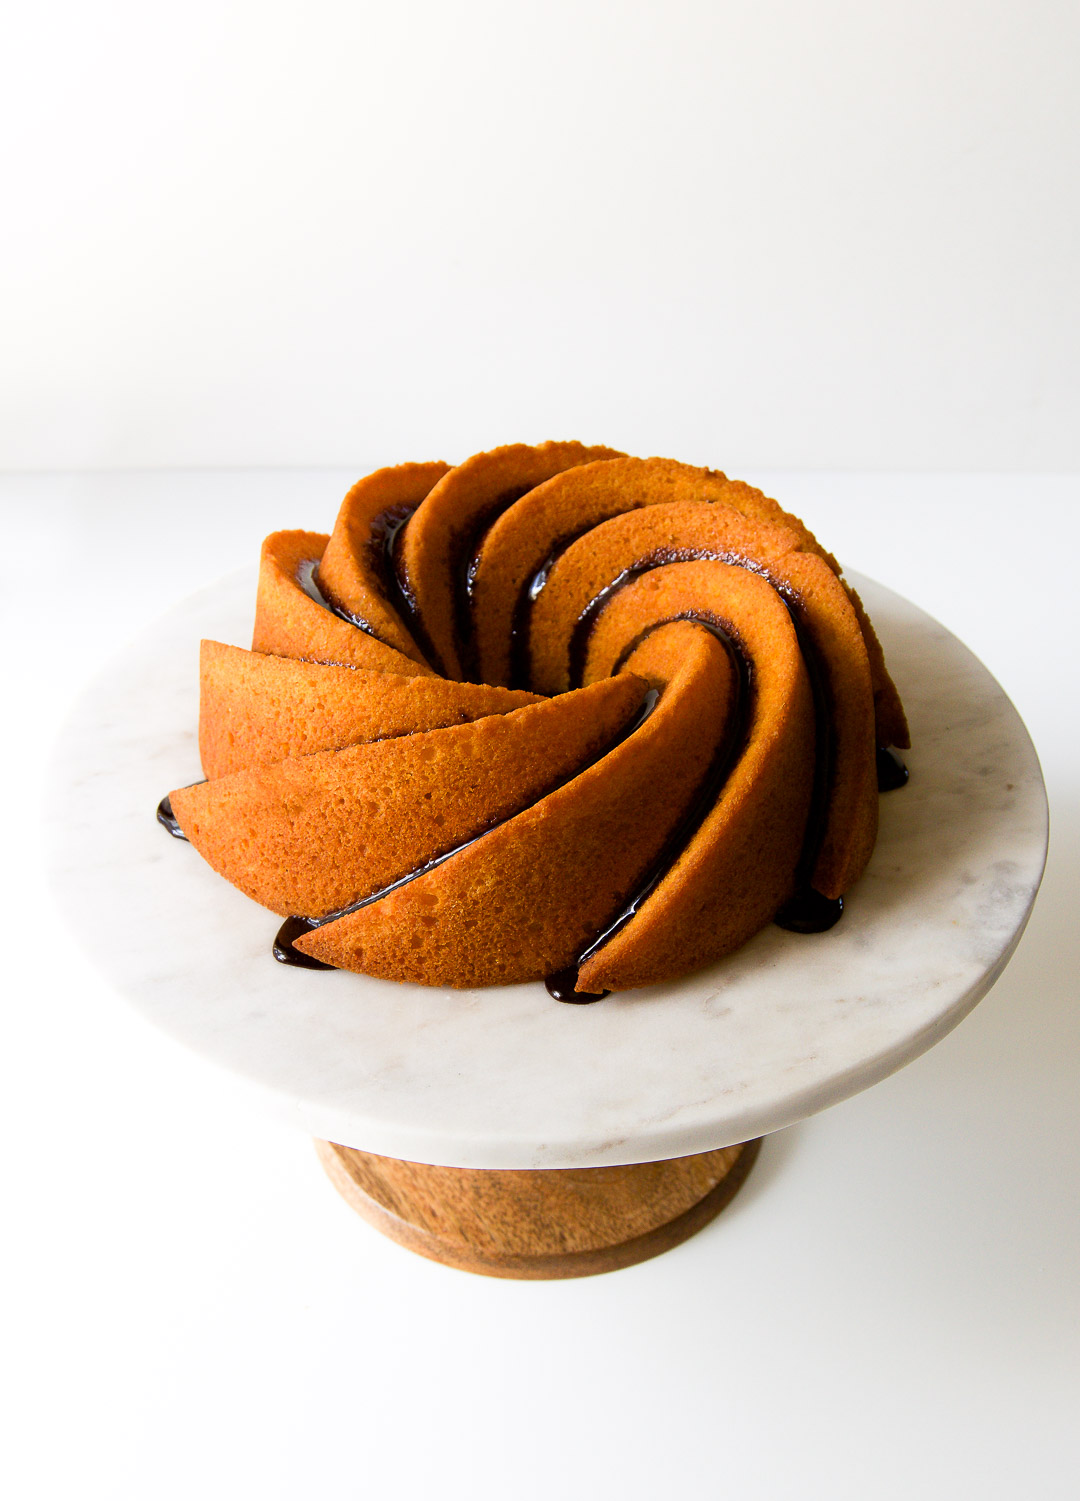 Bolo de Cenoura (Carrot Cake) Recipe - NYT Cooking